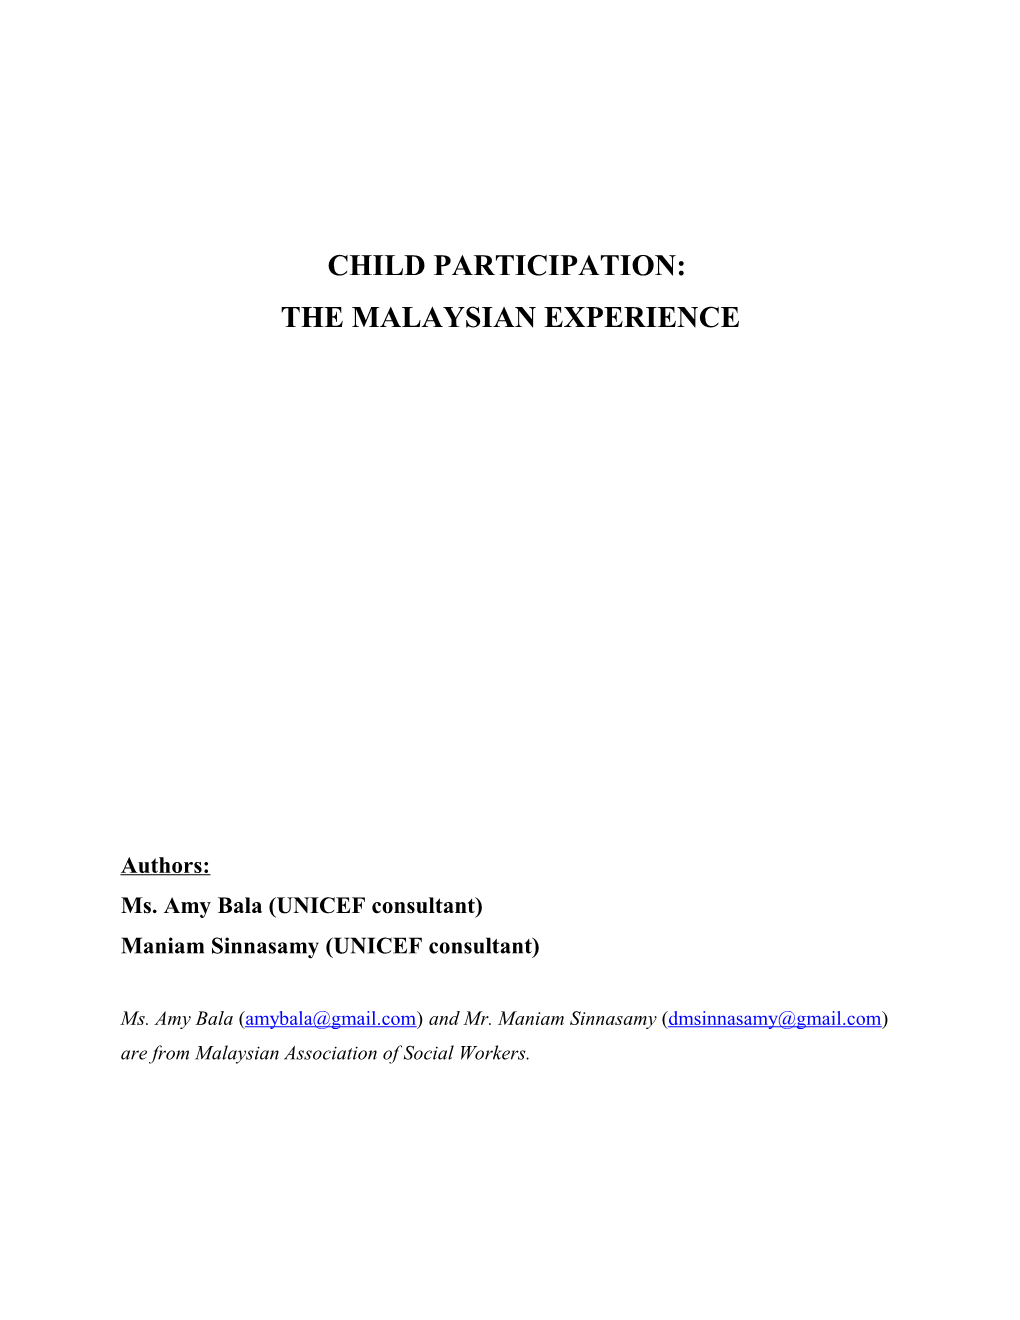 Child Participation